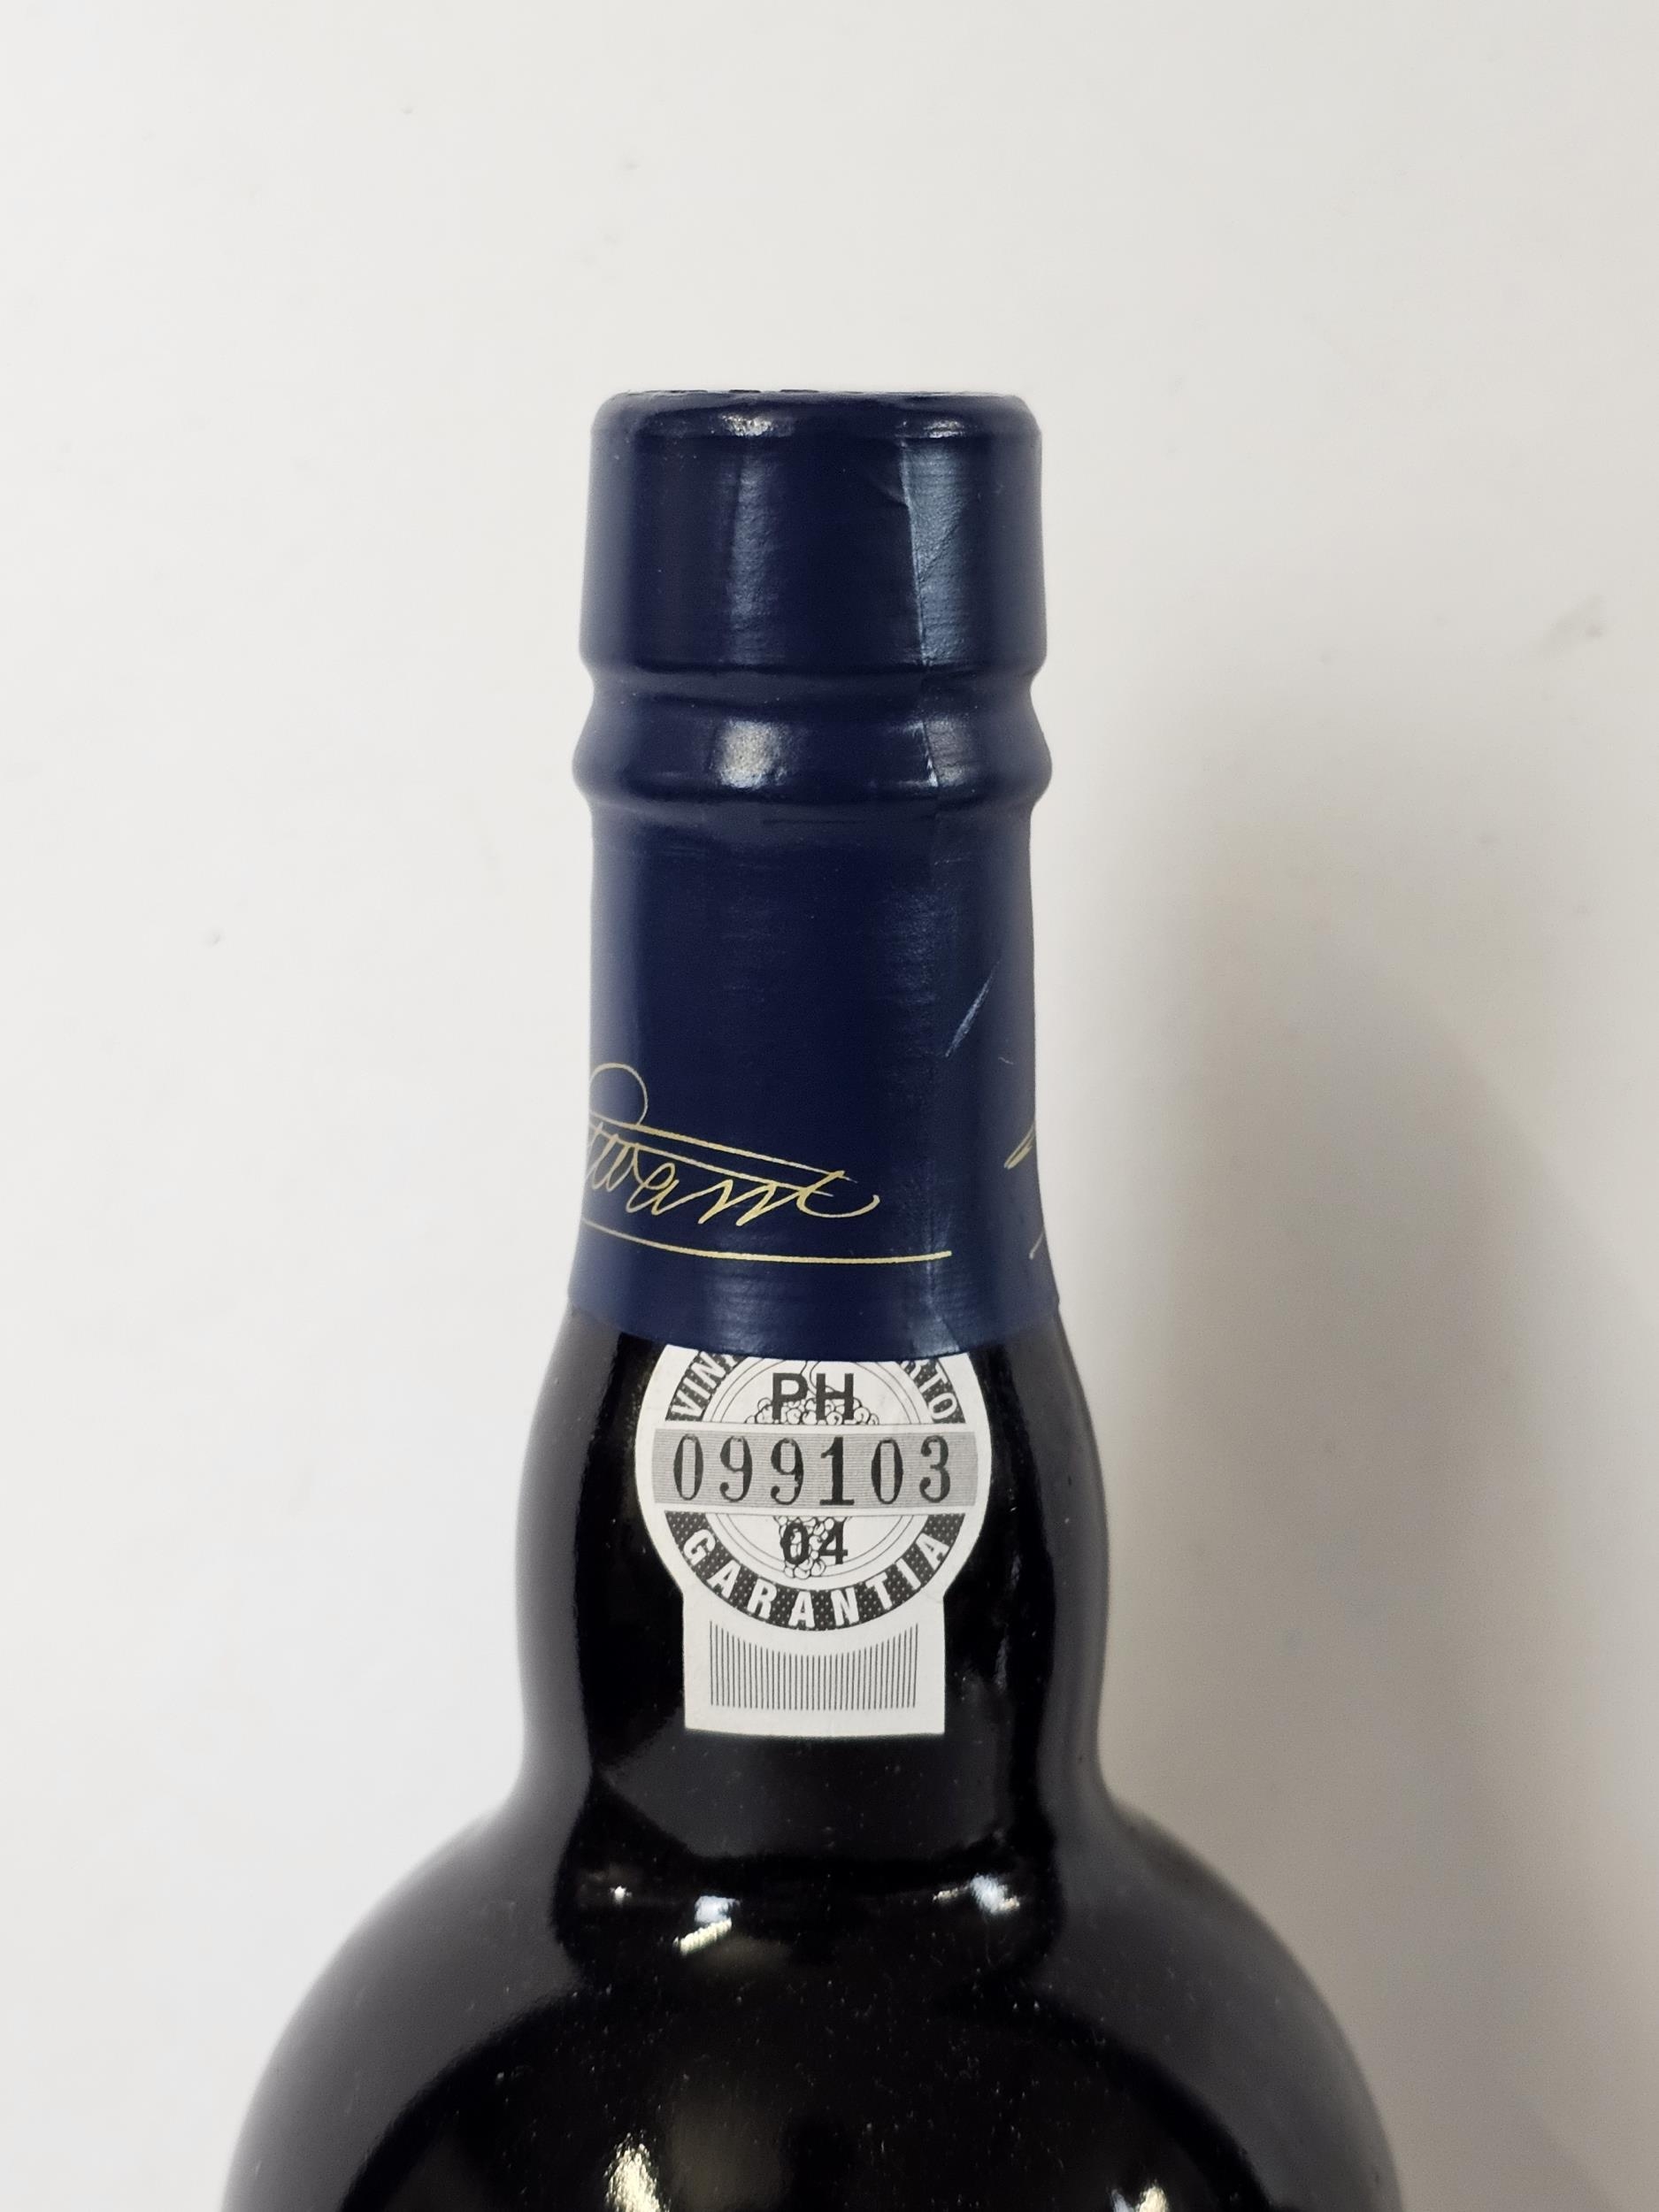 2001 Warre's Late Bottled Vintage Port, Portugal. 2 x 75cl bottles - Bild 4 aus 5